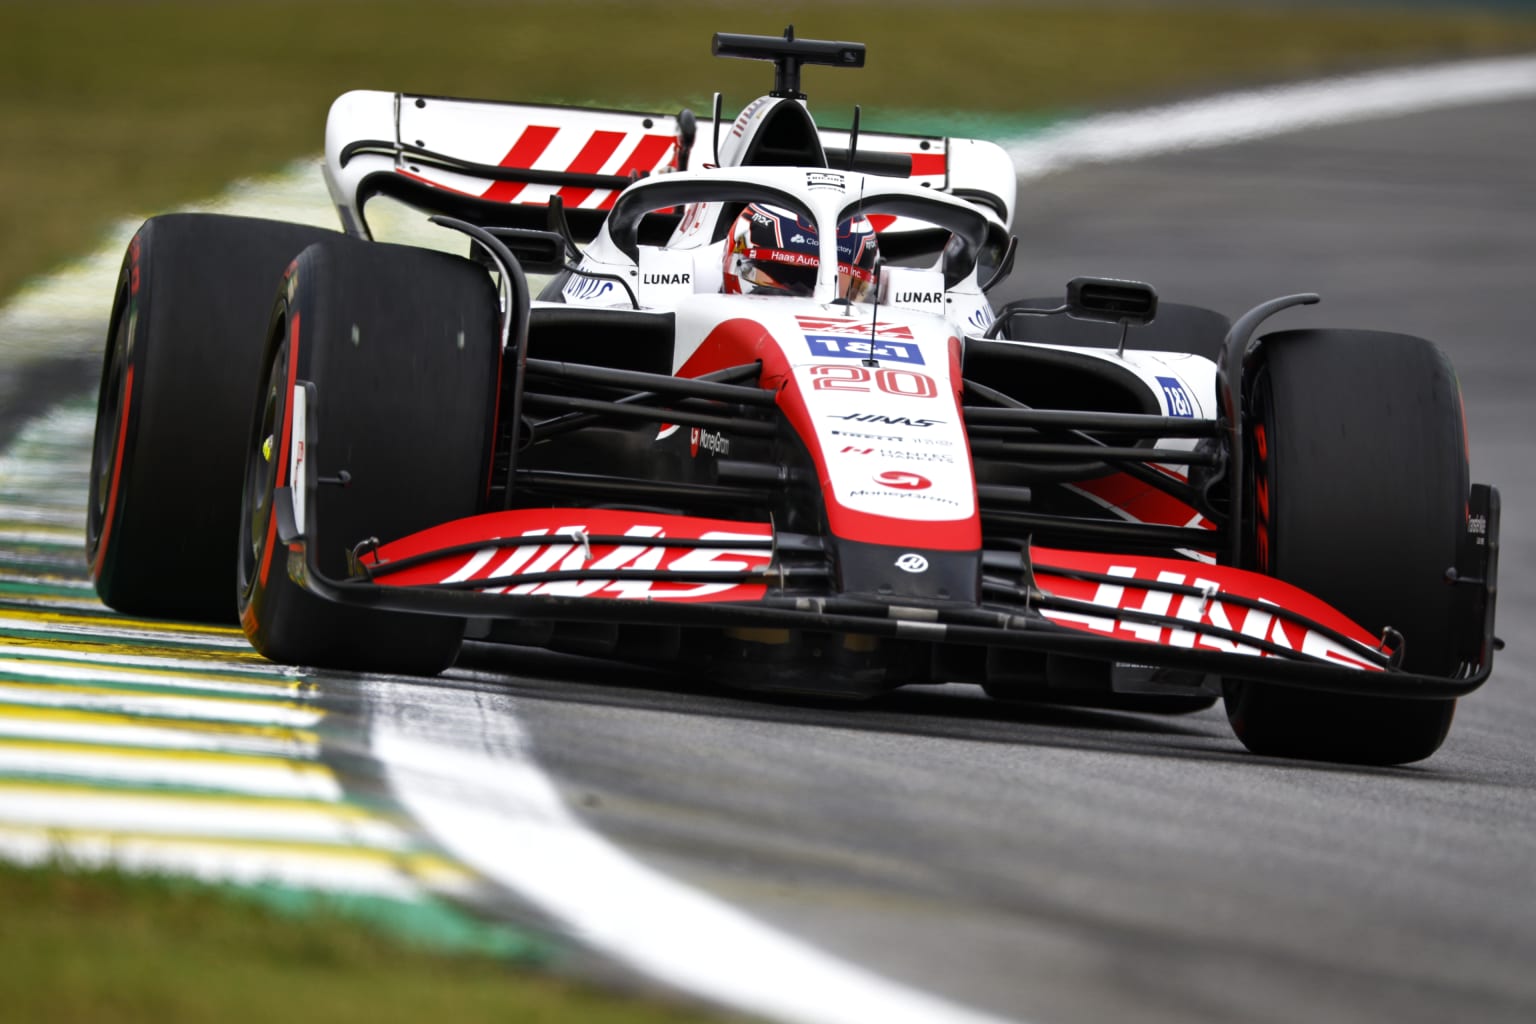 Haas – F1 Racing Team